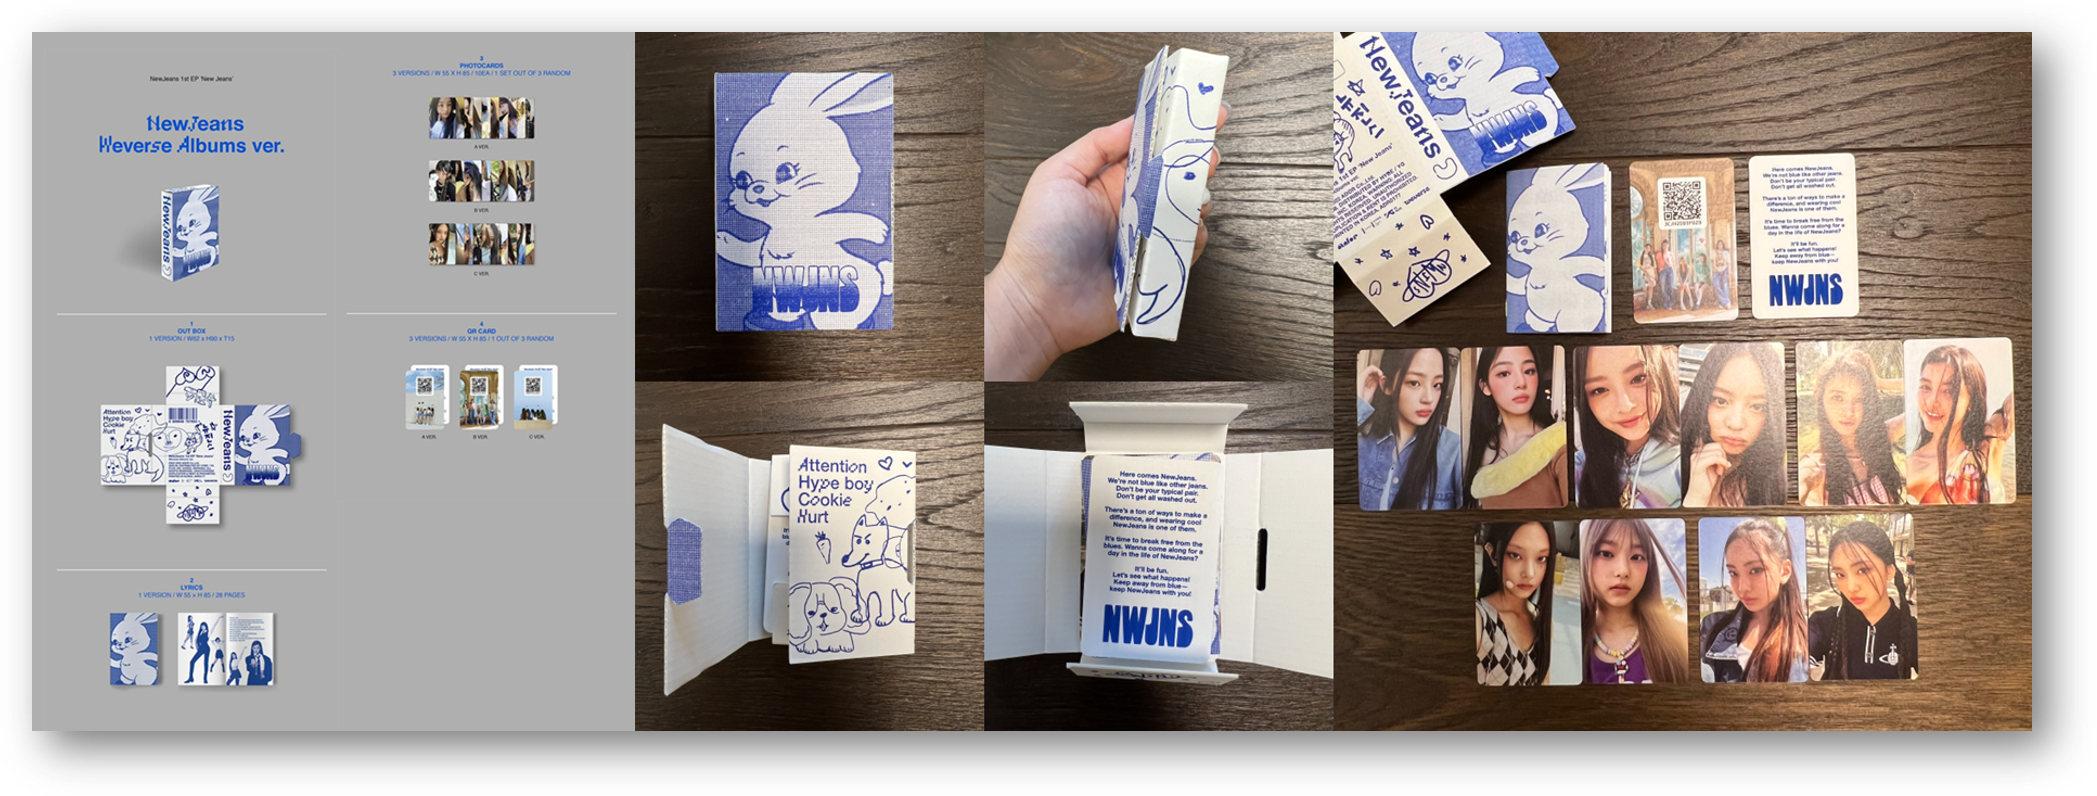 (뉴진스의 위버스 앨범 버전 구성 & 에디터 보자기🖐의 앨범깡) 종이 박스를 오픈하는 형태로 되어있고, 포토카드를 제외하고는 기존에 발매되던 평균 앨범 사이즈에 비해 컴팩트한 사이즈로 구성되어있다. QR 코드는 포토카드 형태로 제공되며, 무려 10개의 포토카드를 주는 갓성비 구성이었다!